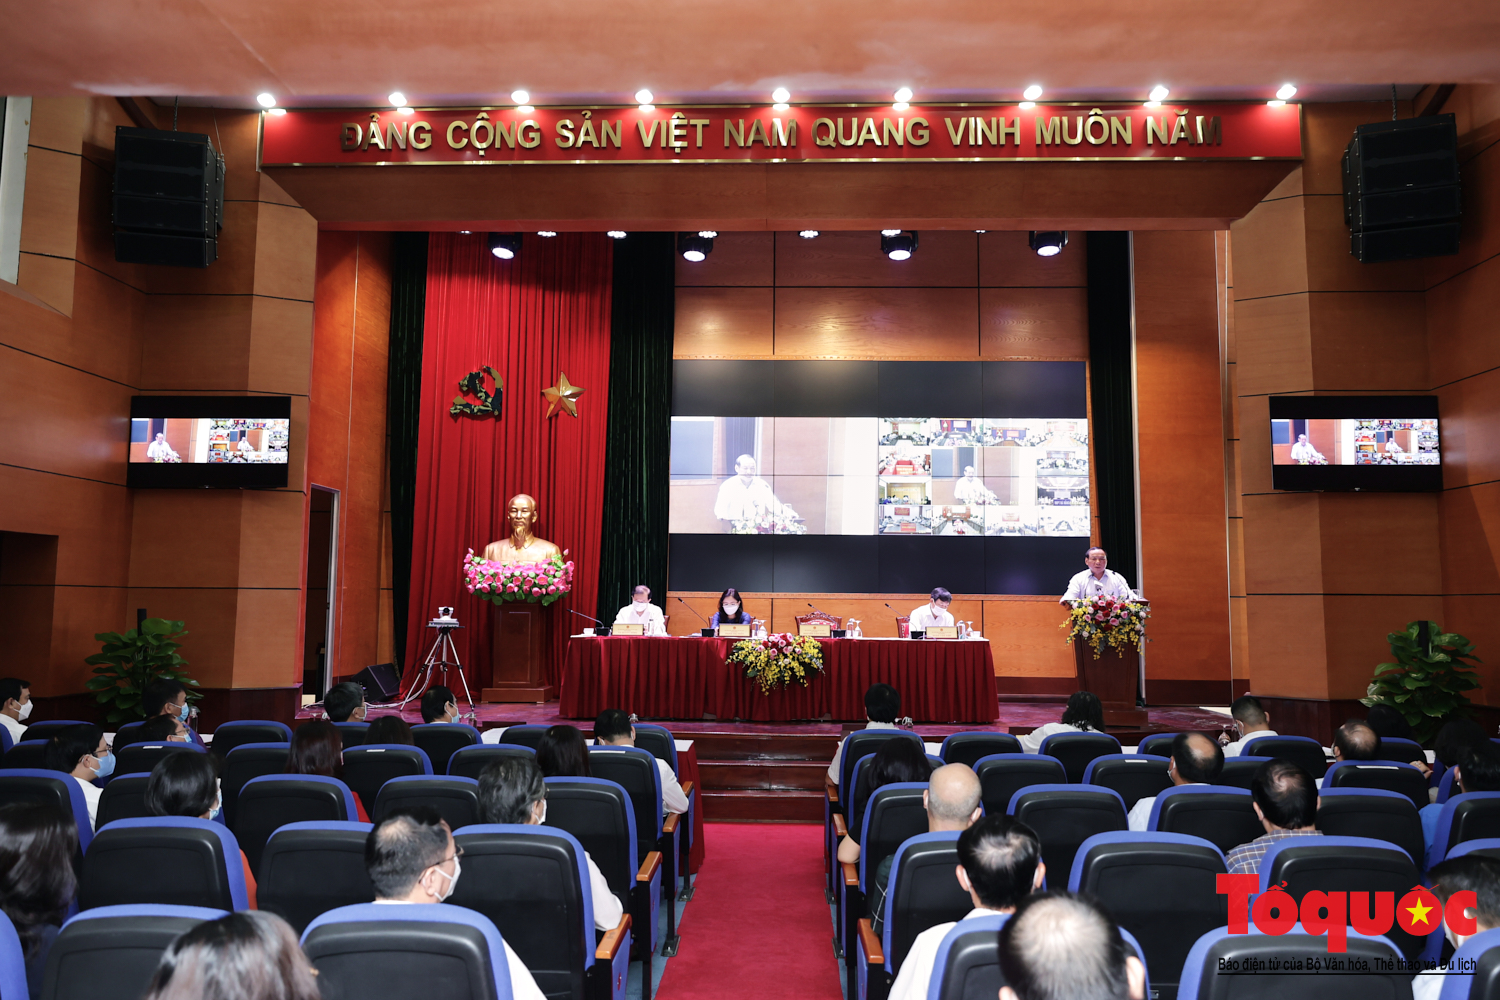 Bộ VHTTDL tổ chức Hội nghị lấy ý kiến phát triển văn học